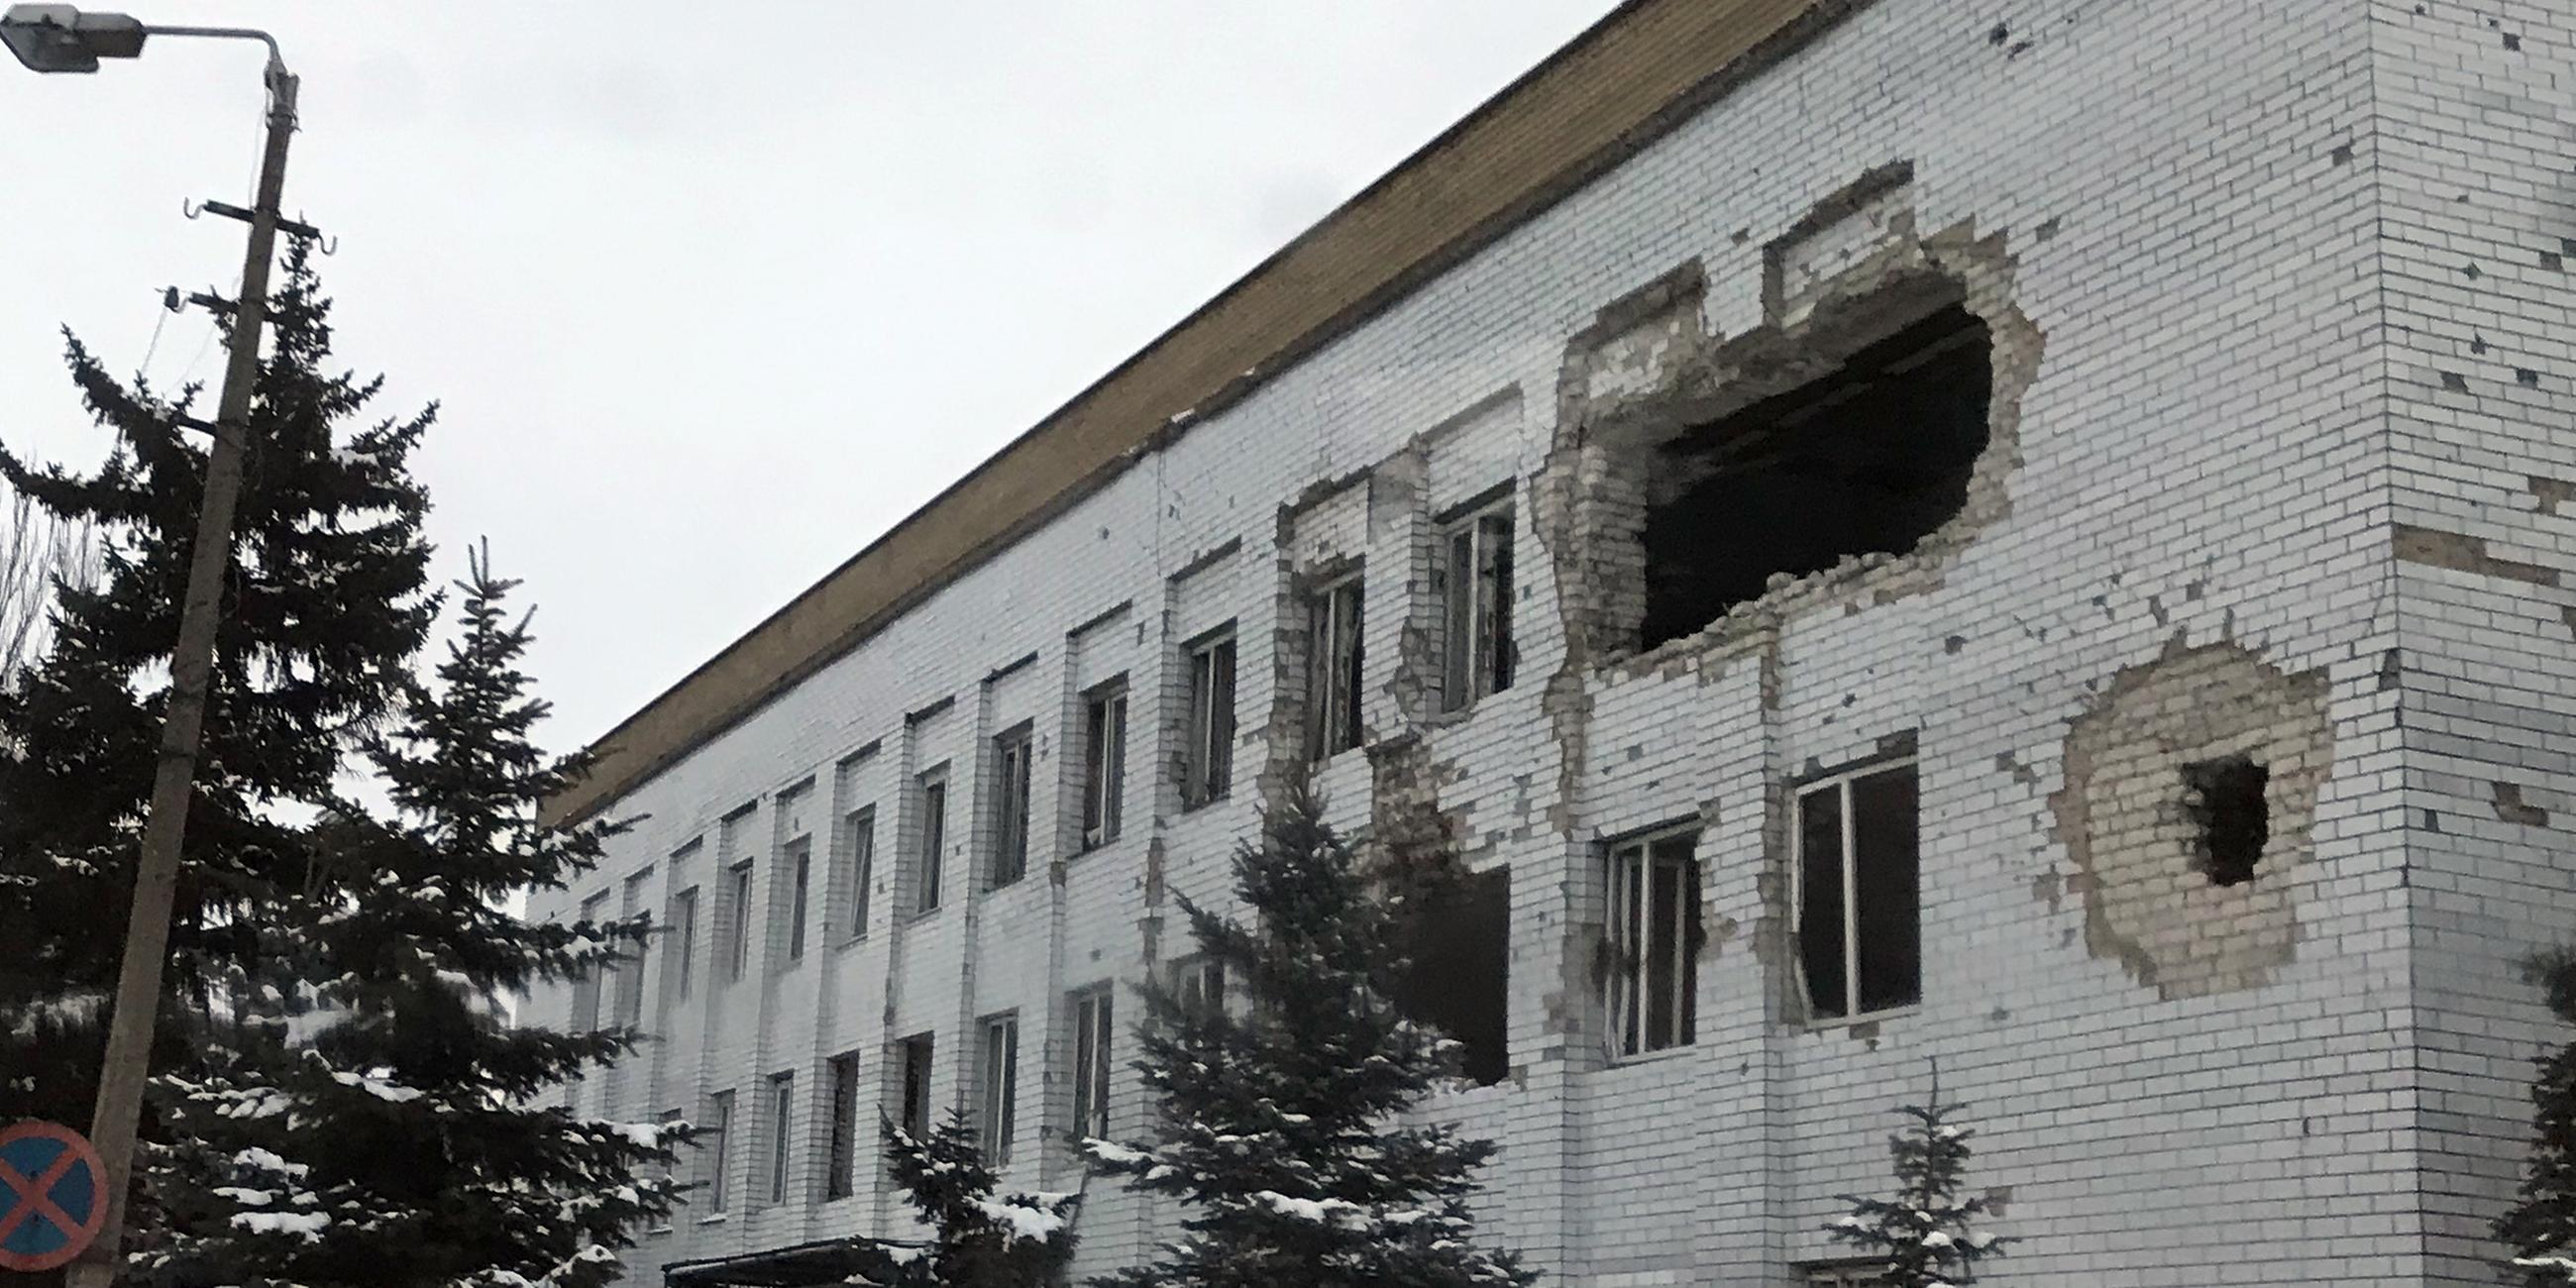 Das ehemalige Polizeigebäude, welches von einem Panzer beschossen worden ist